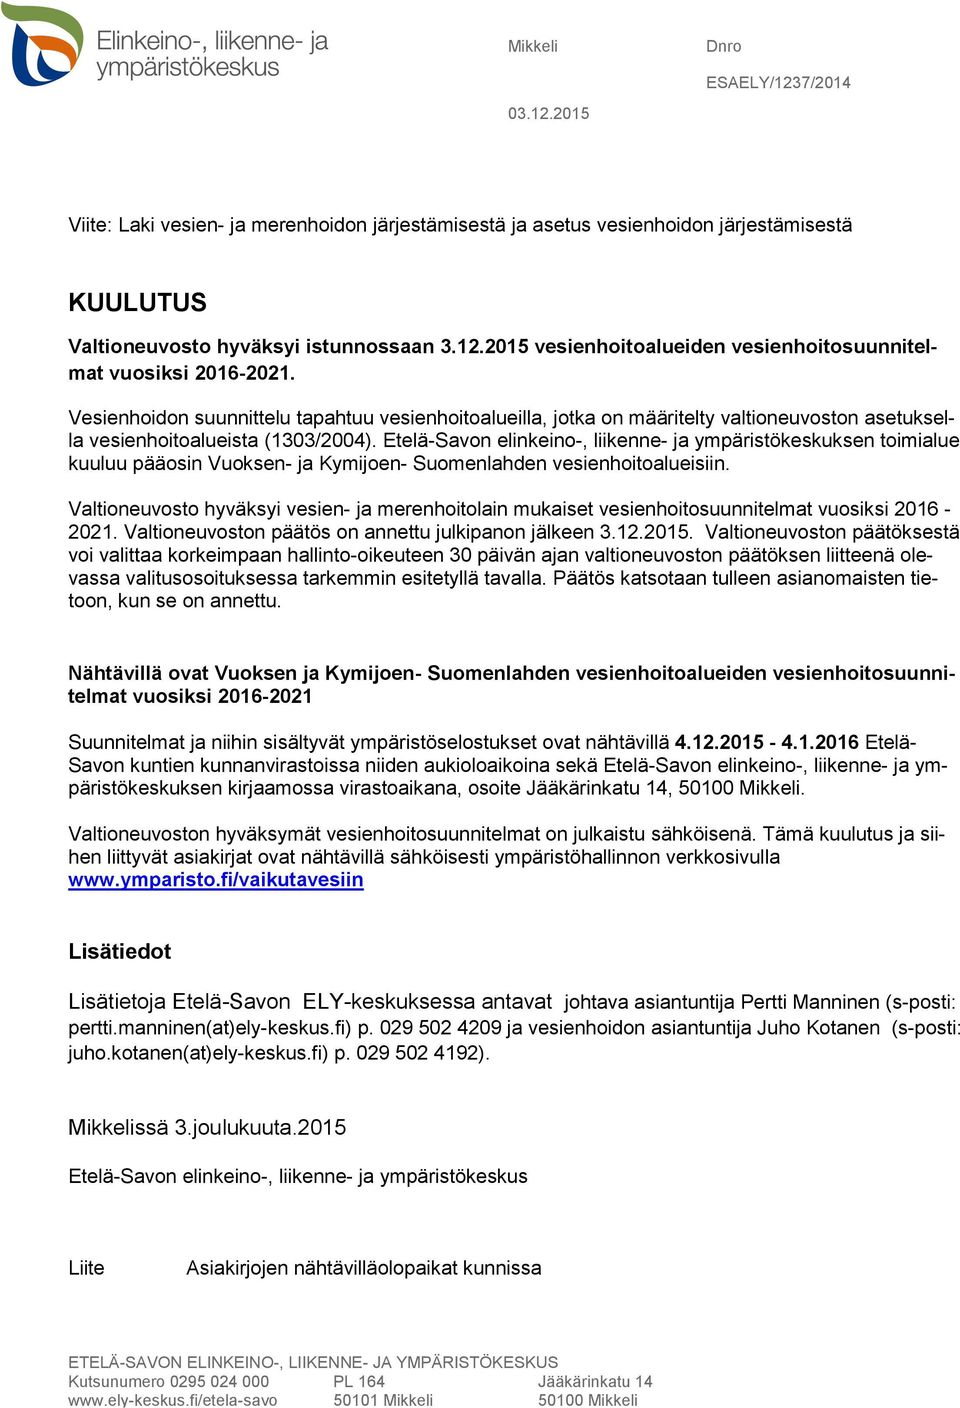 Etelä-Savon elinkeino-, liikenne- ja ympäristökeskuksen toimialue kuuluu pääosin Vuoksen- ja Kymijoen- Suomenlahden vesienhoitoalueisiin.